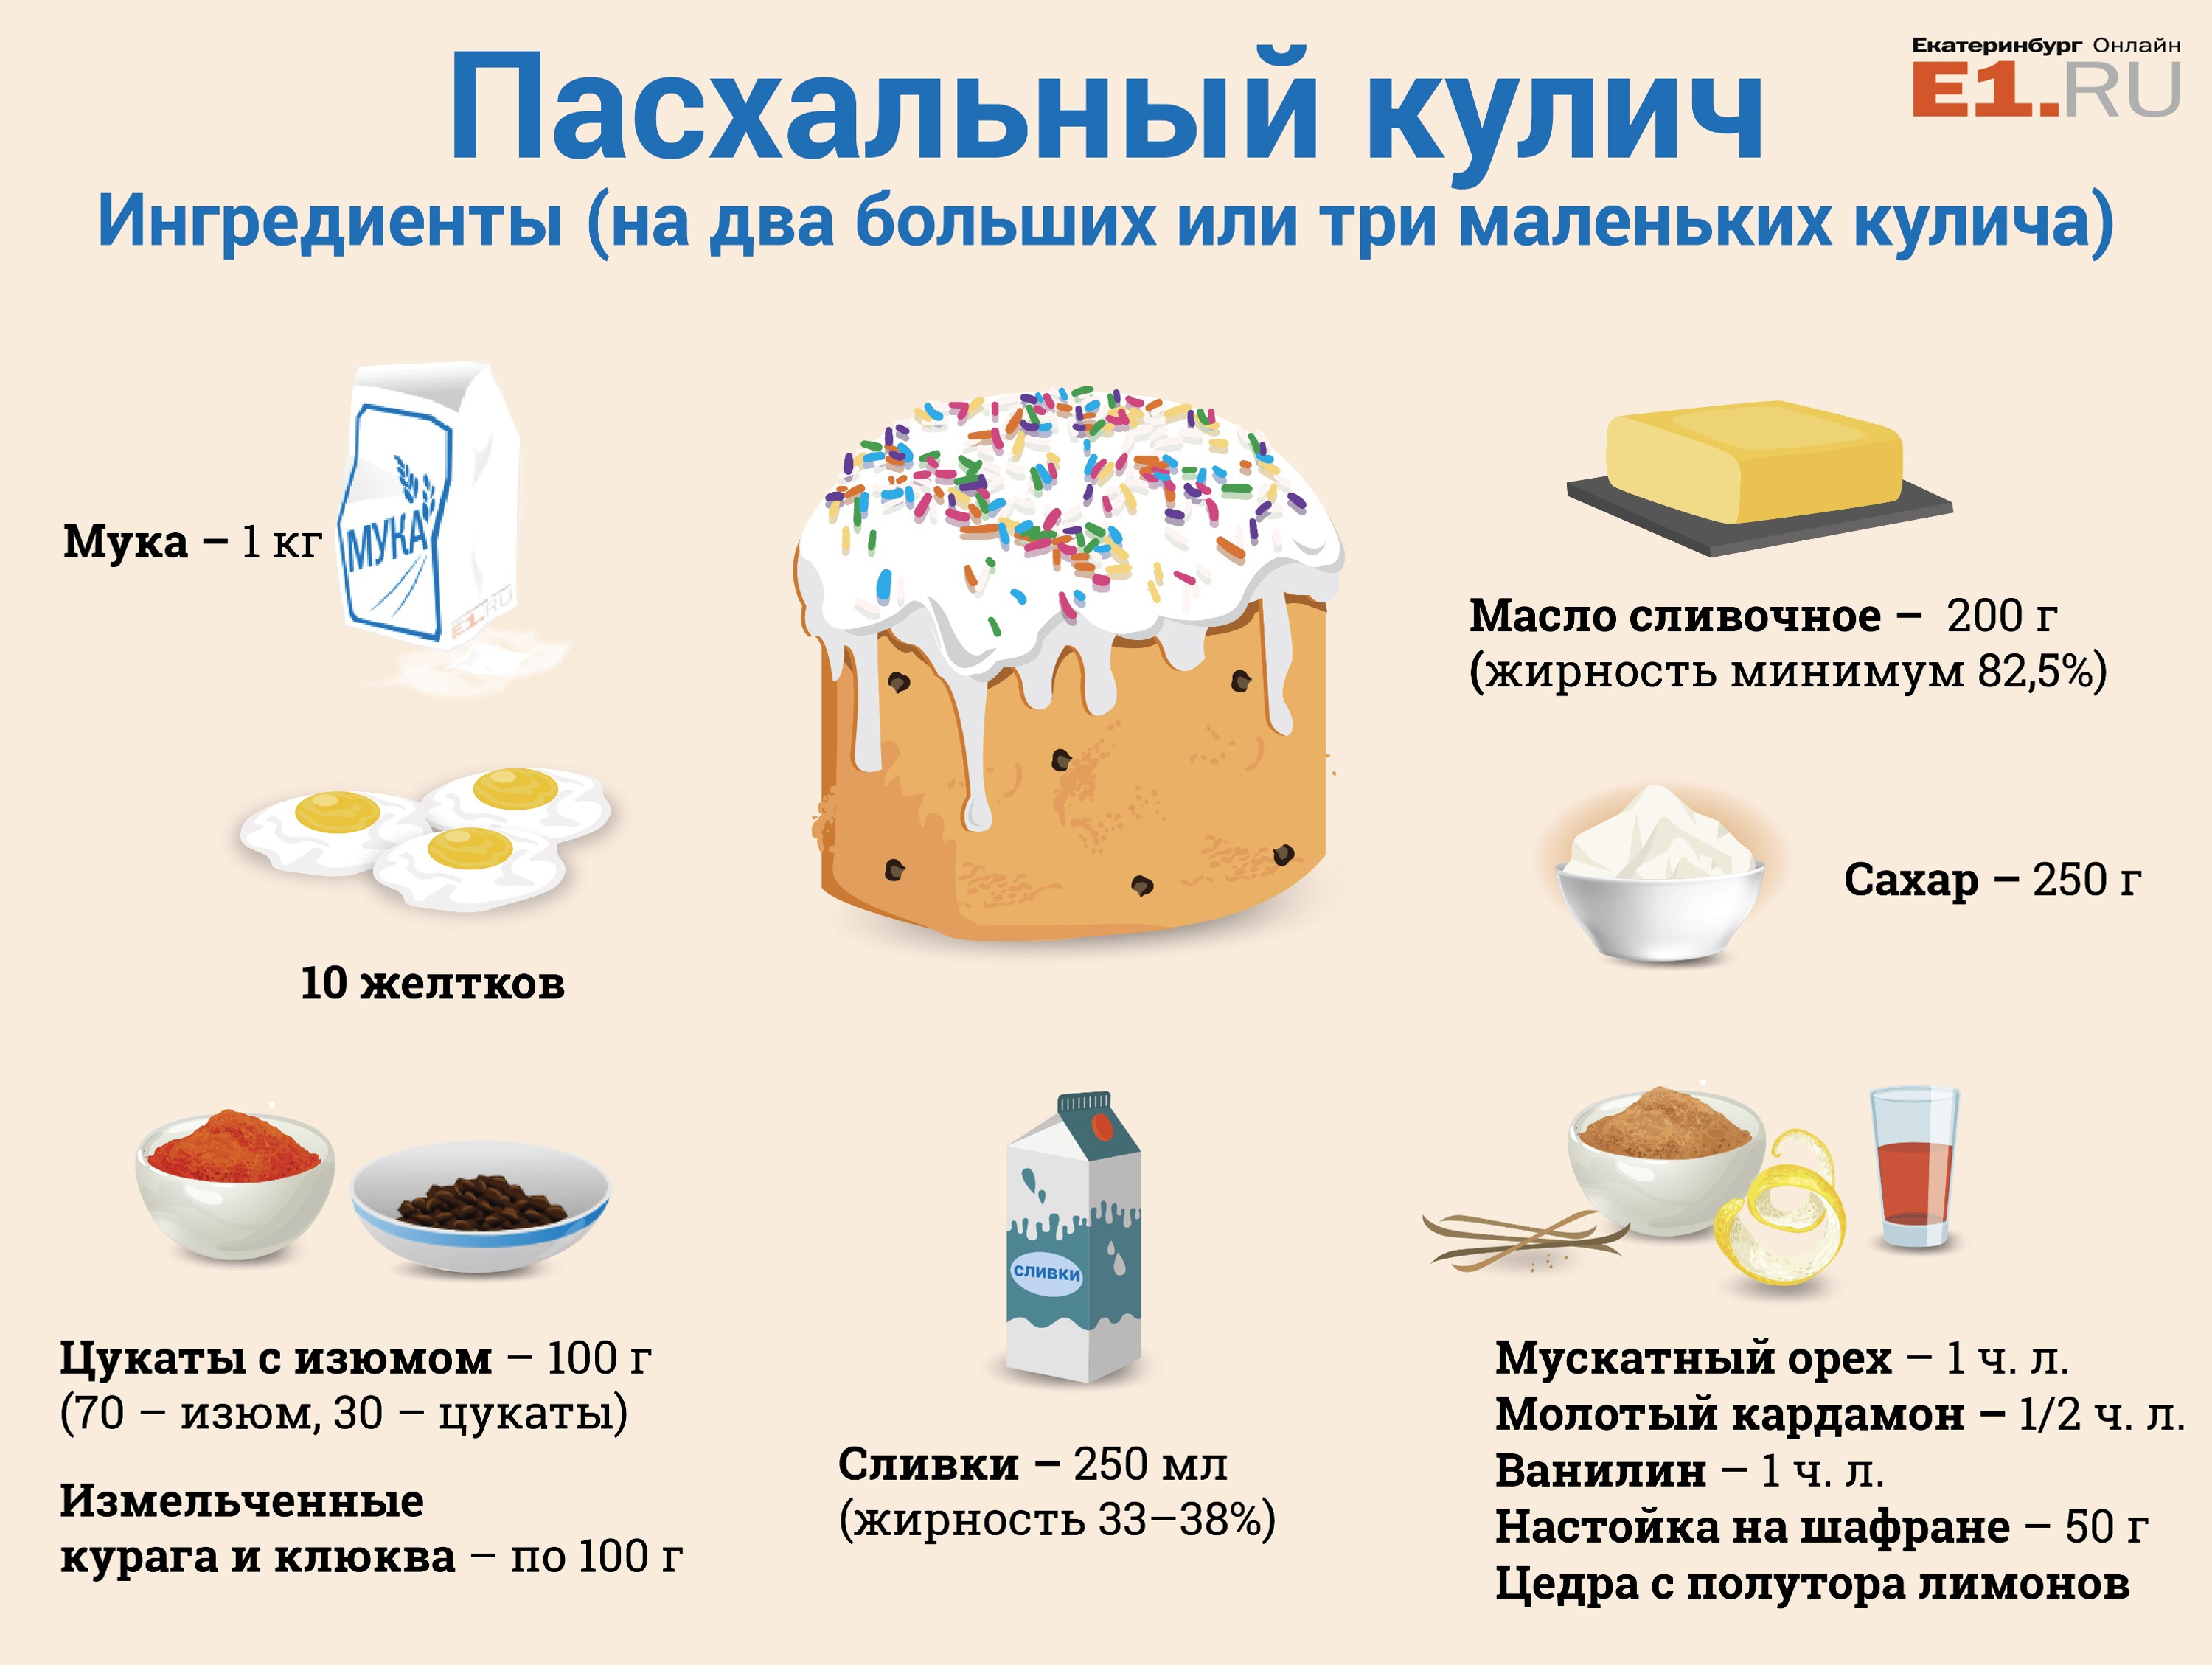 Подробный список ингредиентов и их пропорции. Себестоимость наших куличей составила 350–400 рублей